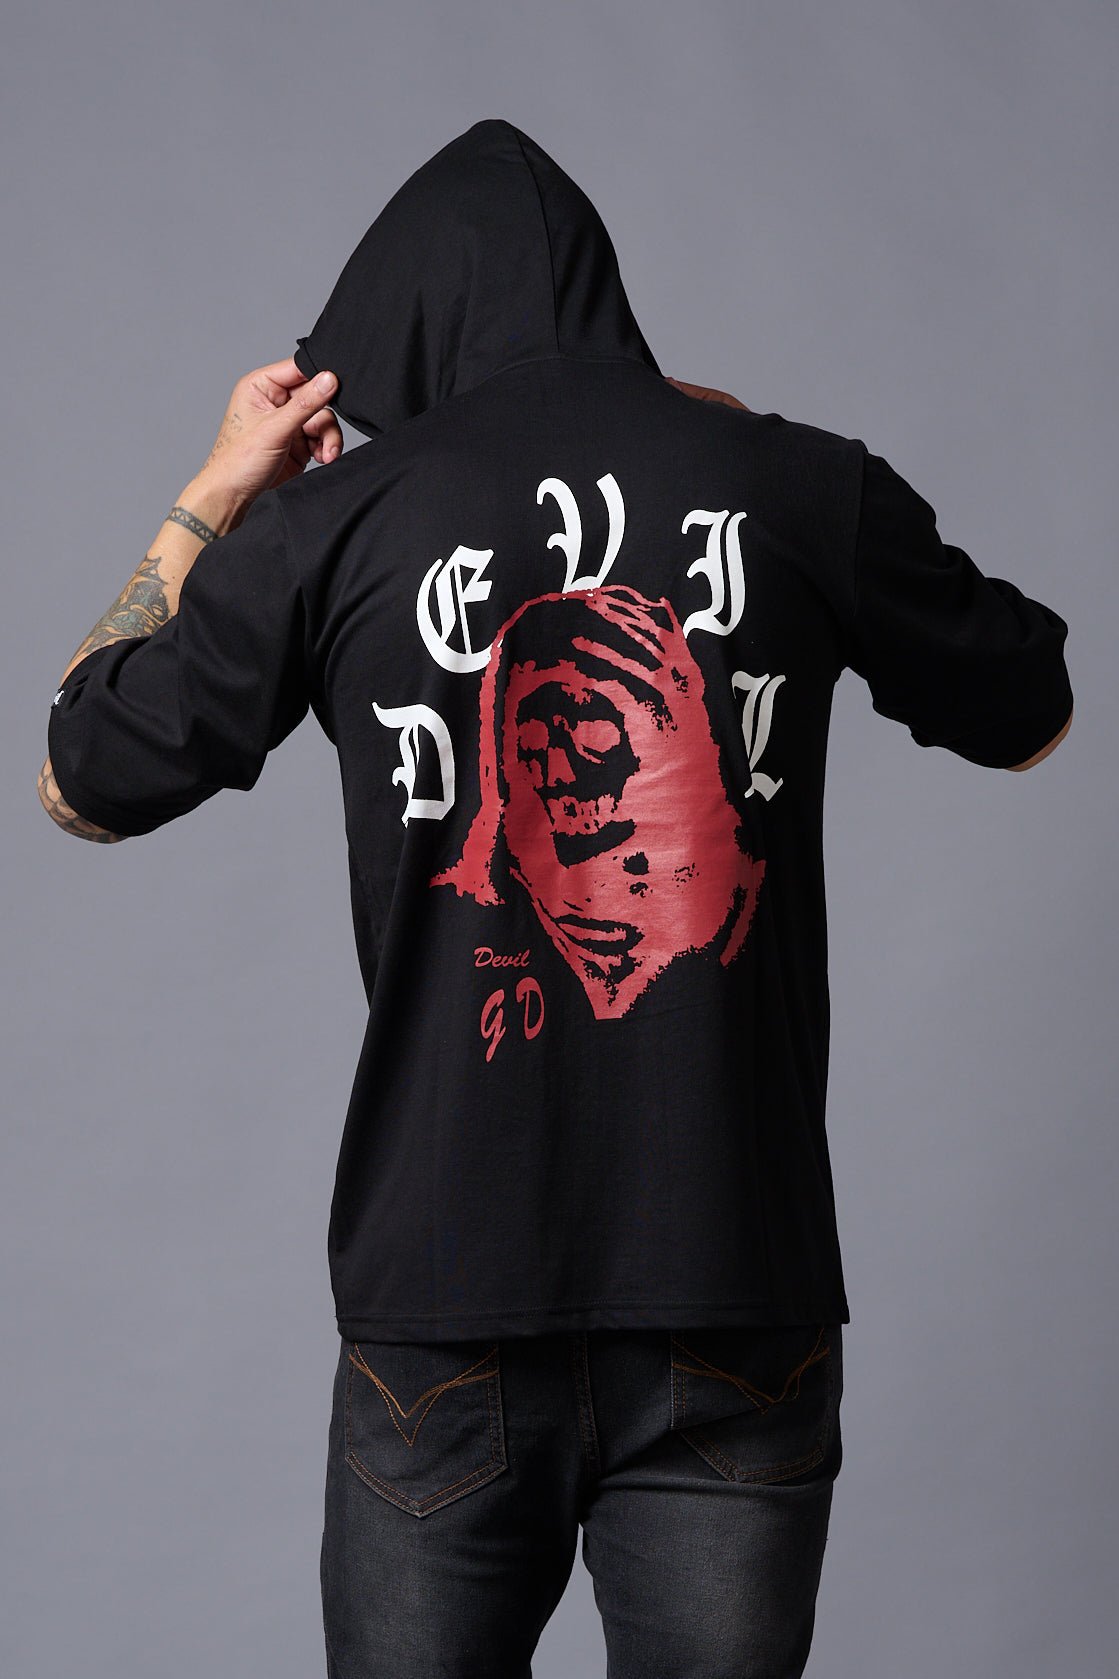 Dark Devil Black Oversized Hooded T-Shirt for Men - Go Devil